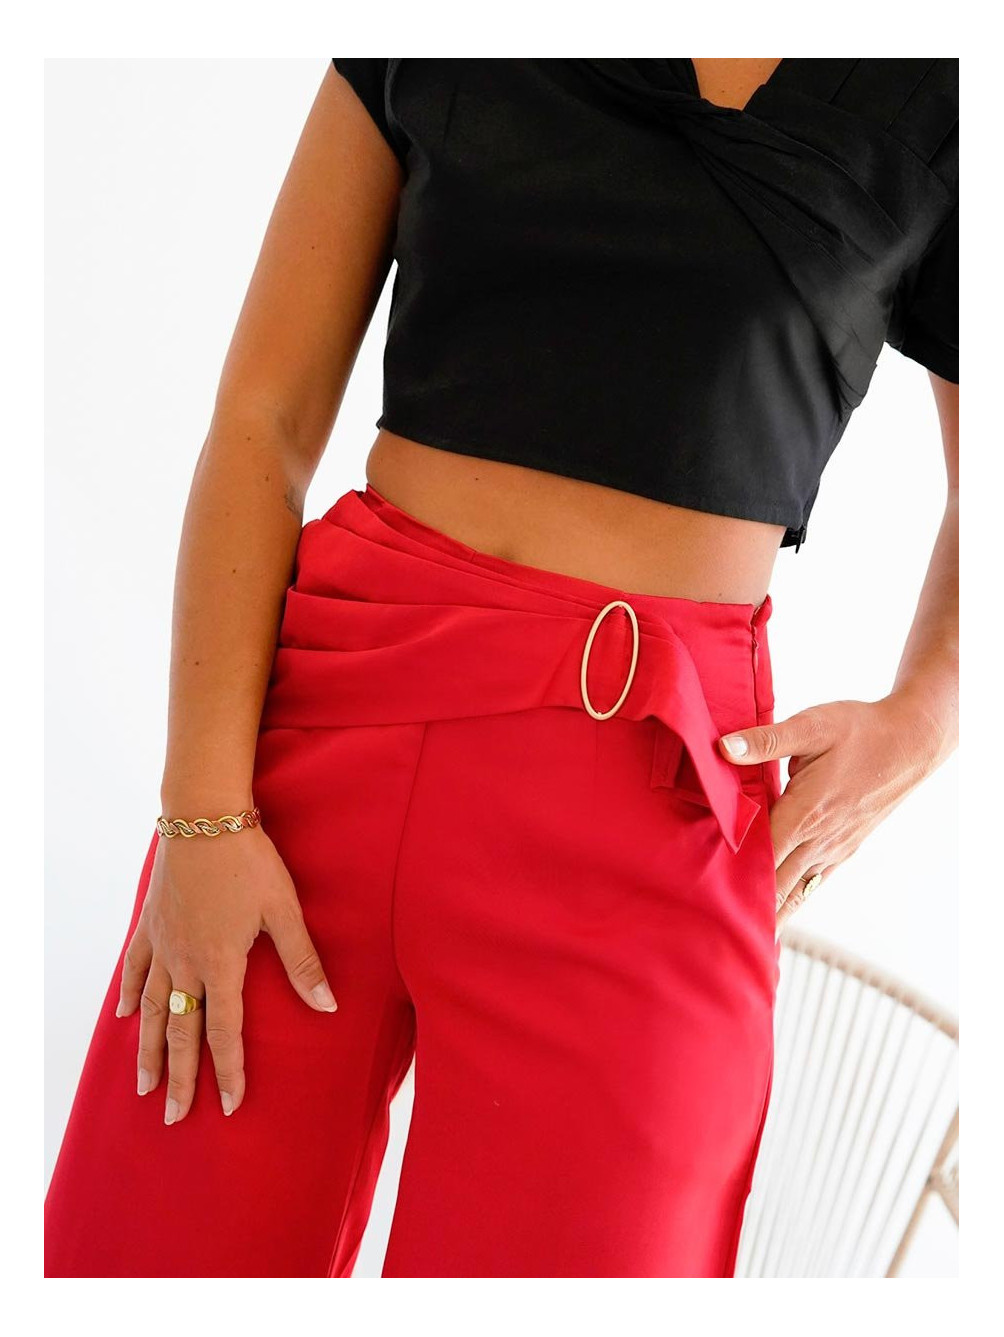 Pantalón Rojo Hebilla, Pantalón de Mujer, Pantalones de Vestir, Mariquita Trasquilá